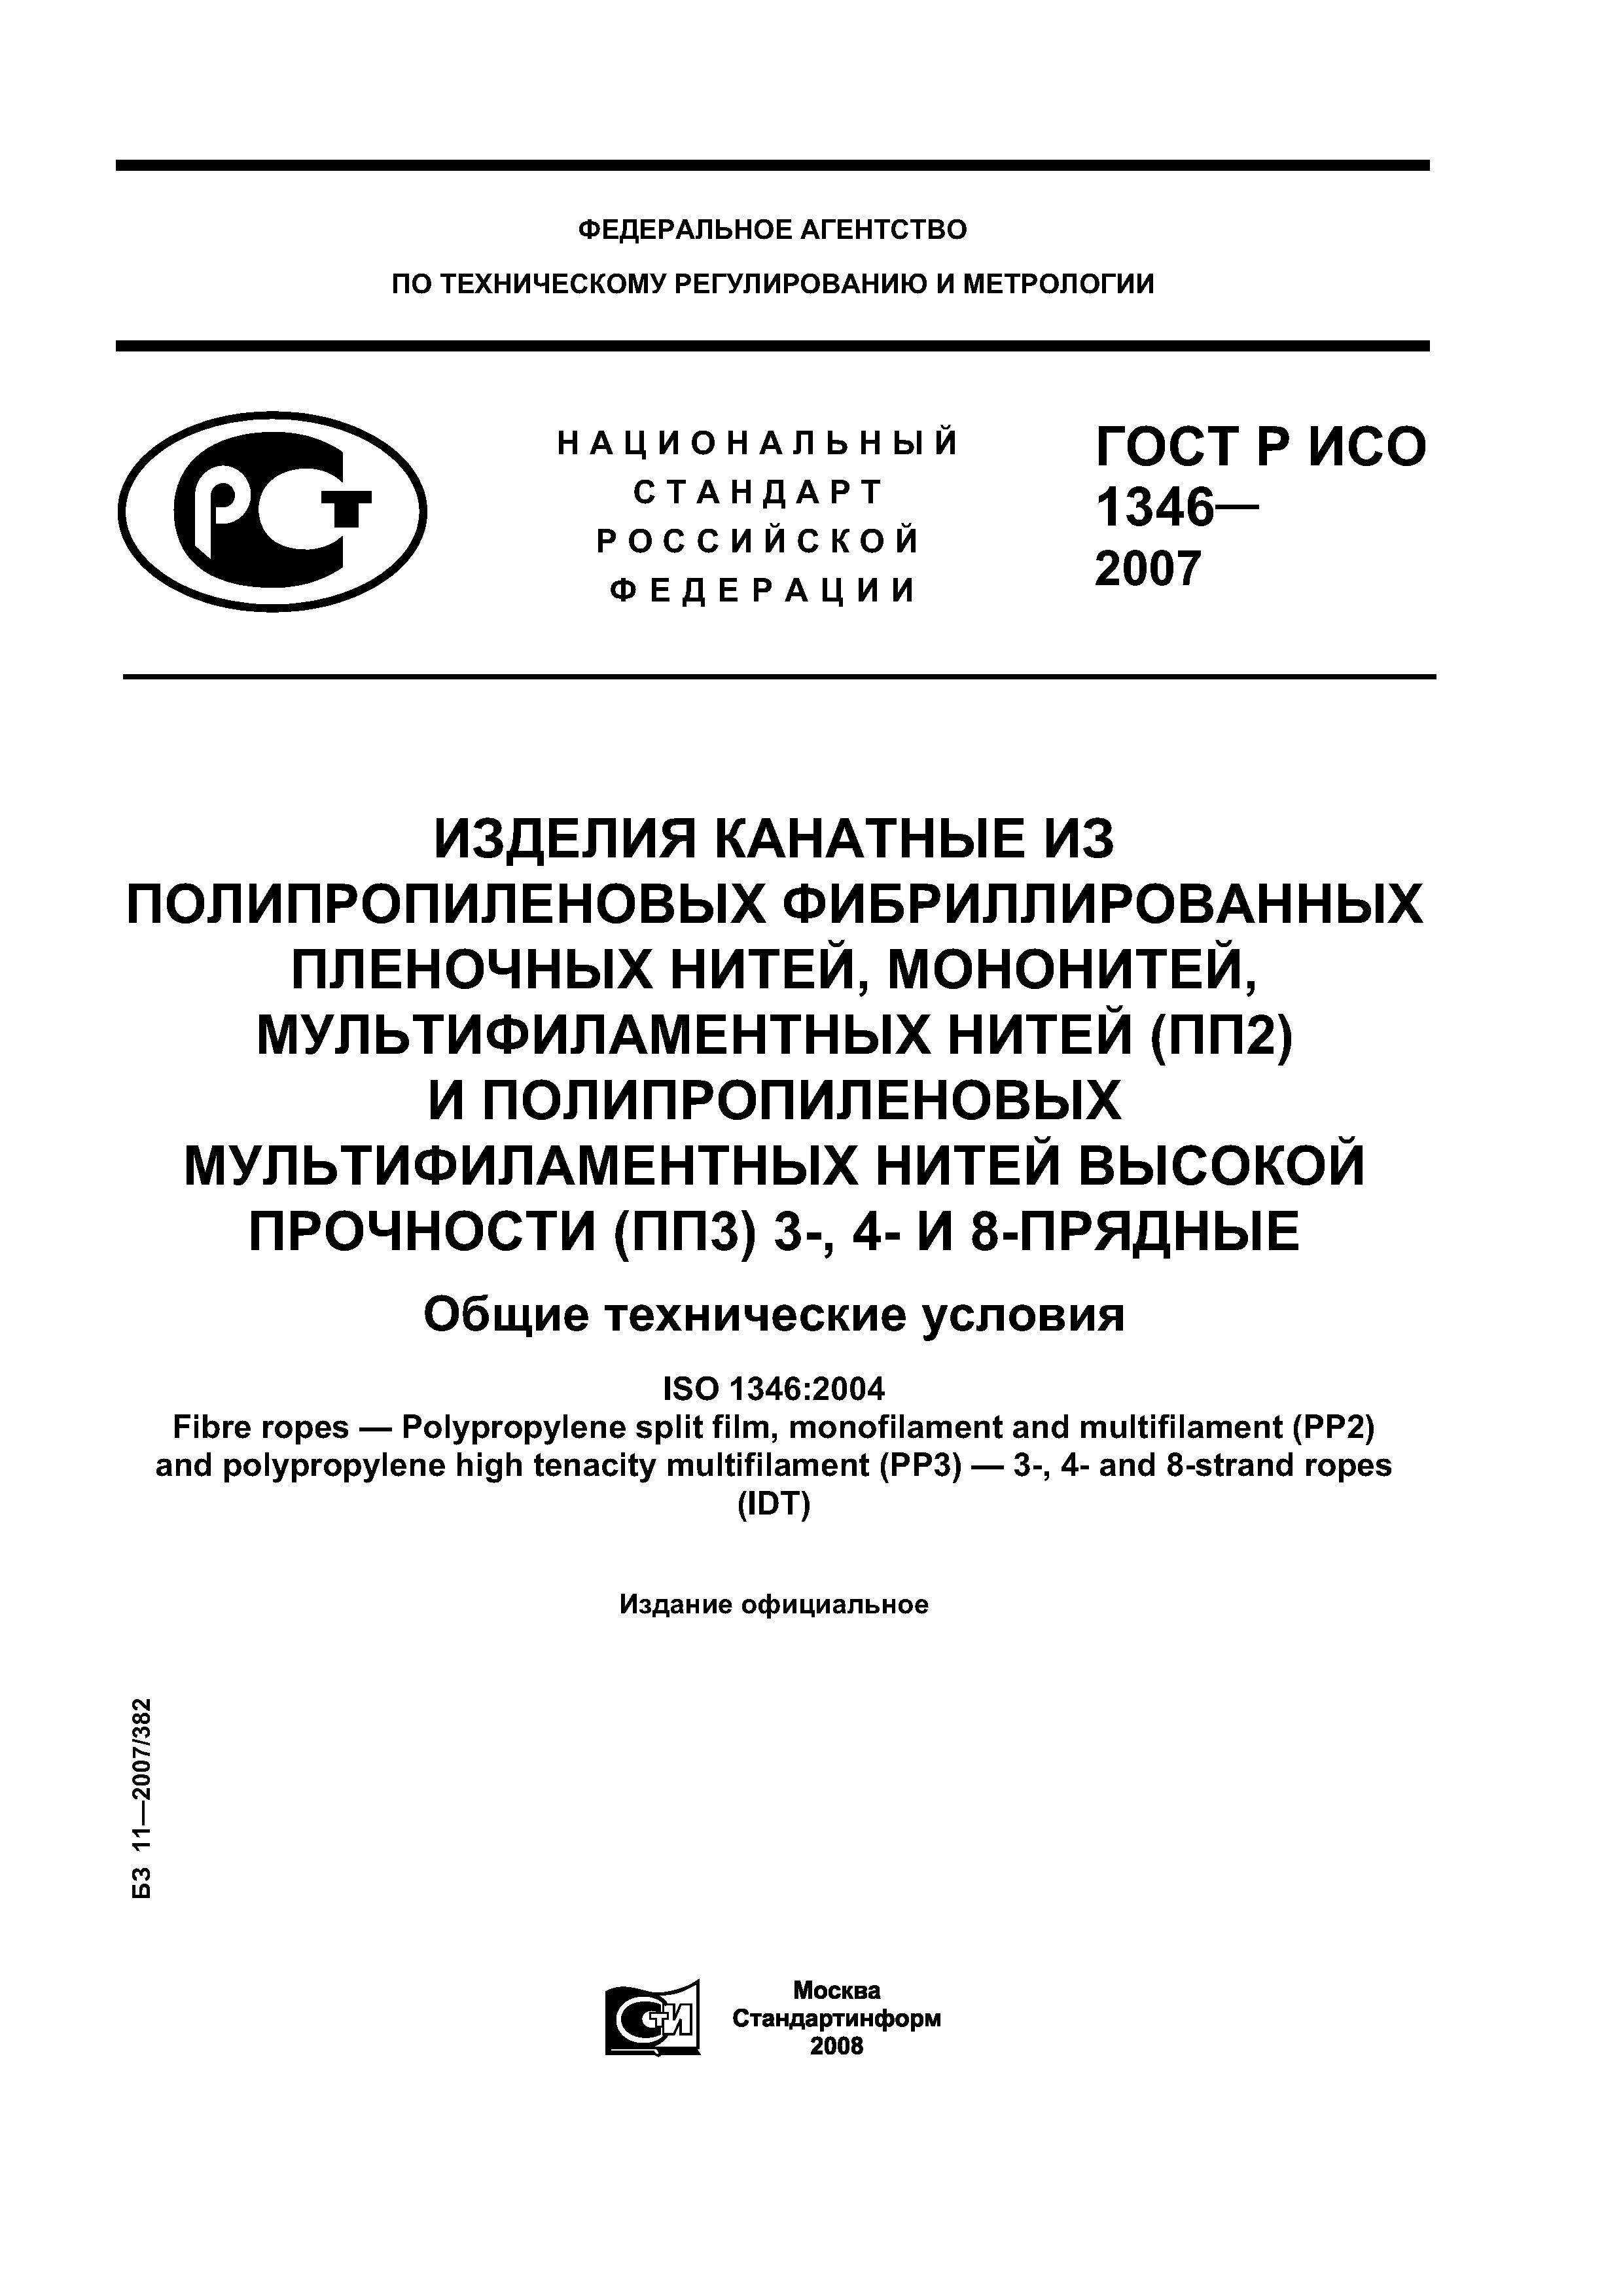 ГОСТ Р ИСО 1346-2007